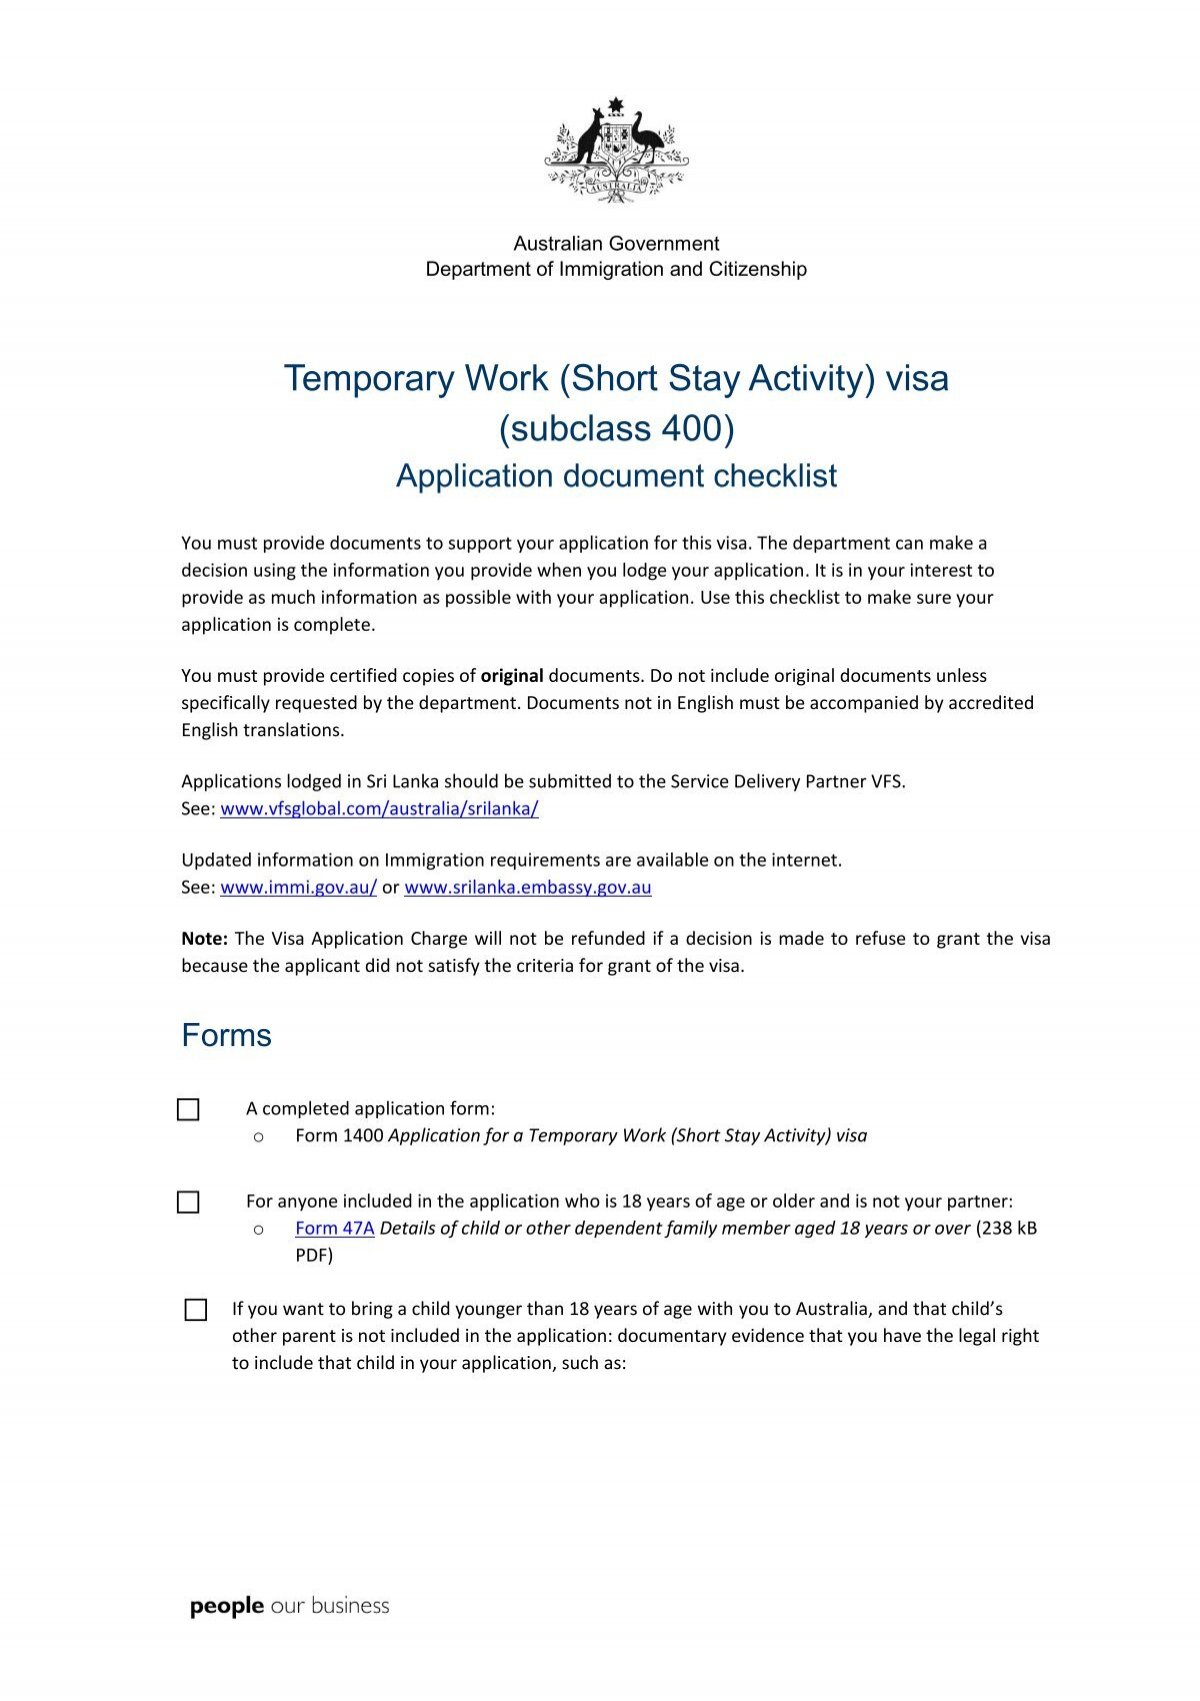 Temporary Stay Activity) visa (subclass 400)